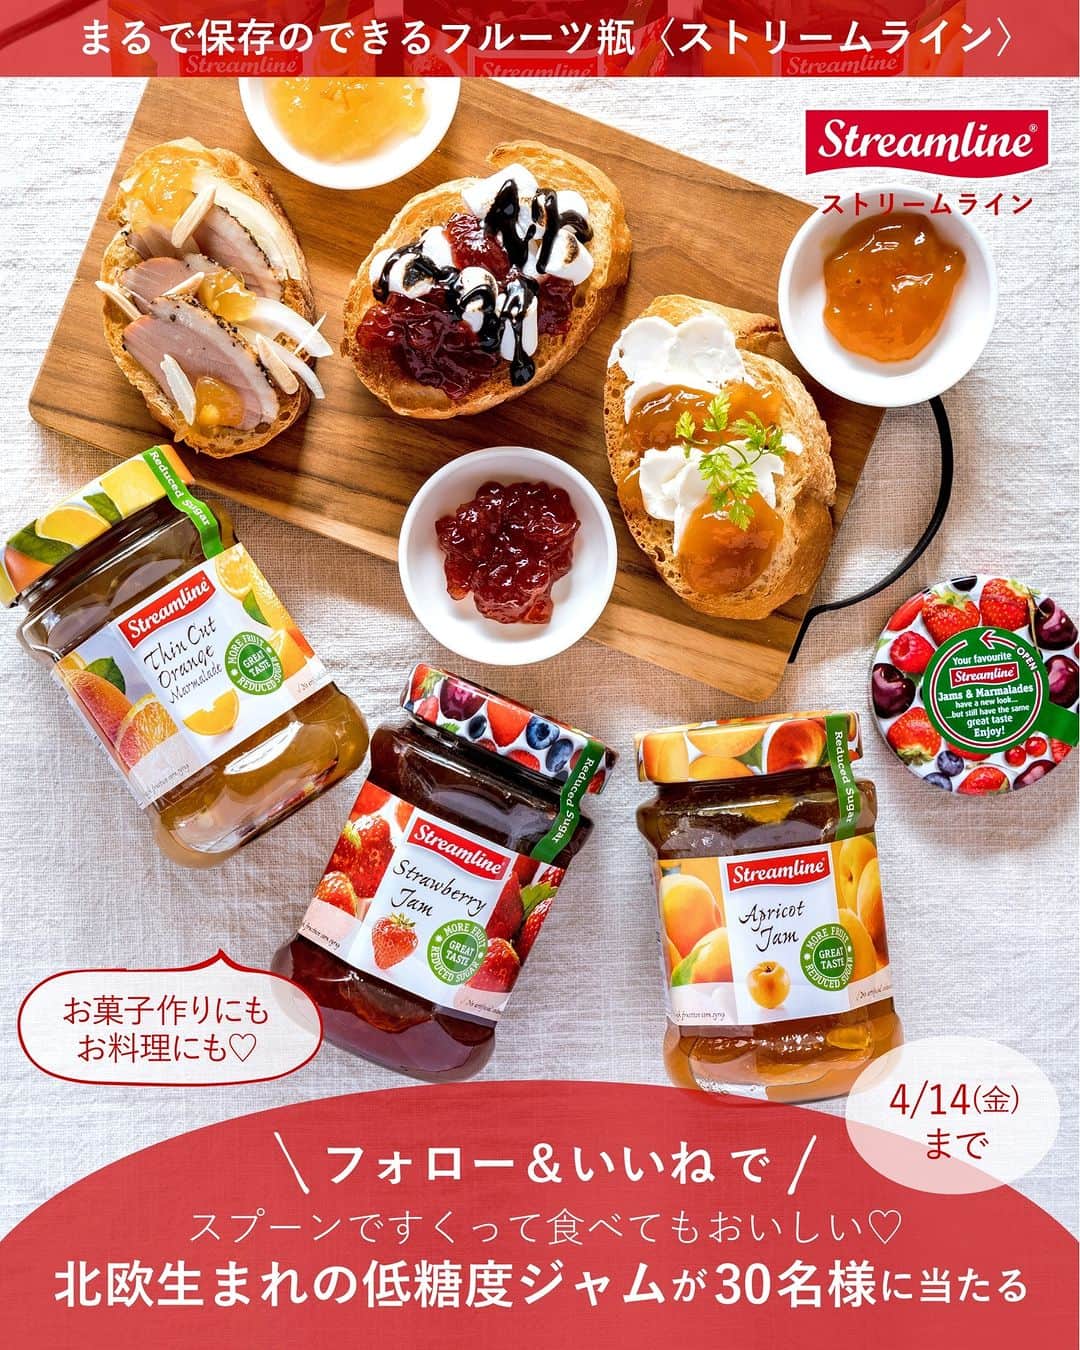 キタノ商事株式会社さんのインスタグラム写真 - (キタノ商事株式会社Instagram)「食べてみたい！と思ったらコメント欄に「🍓」作ってみたい！と思ったら「🍰」で教えていただけると嬉しいです♡  🍓ストロベリーバスクチーズケーキのレシピ🍓 🇩🇰ストリームライン[ストロベリー] みなさんいちごは好きですか？ 毎年甘くておいしいいちごが食べられるだけで日本のアドバンテージを感じるくらいにこの季節のスペシャルなフルーツであるいちごですが、売り場からフレッシュないちごが去っても、いちごのスイーツは作れます。  ストリームラインは保存のできるフルーツ瓶のようなデンマーク生まれの低糖度ジャム。糖度が低いので甘すぎず、お菓子作りにぴったりです。ストリームラインで作るストロベリーバスクチーズケーキは、フレッシュないちごでつくったような味わいです。ぜひお試しください。 🍓  🇩🇰ストリームライン ジャムで作るストロベリーバスクチーズケーキ ・ 〈所要時間〉 約15分 ※クリームチーズ・卵を常温に戻す時間、オーブンで焼成する時間、冷蔵庫で冷やす時間を除きます ・ 〈材料・直径15㎝　底が抜ける丸型1台分〉 ・クリームチーズ200g ・ストリームラインストロベリージャム130g ・溶き卵1個分 ・薄力粉小さじ2 ・生クリーム50g ・ 〈事前準備〉 ・クリームチーズと卵は常温に戻しておく ・クッキングシートを25㎝角に切っておく ・オーブンは220度に予熱しておく ・ 〈作り方〉 1.クッキングシートをくしゃくしゃに丸め、水でしっかり濡らして水気を絞り、型にぴったりと敷きこむ。内側の水分をキッチンペーパーで拭いておく。 ・ 2.クリームチーズをボウルに入れて、ハンドミキサーの低速でふんわりとダマがなくなるまで混ぜる。 ・ 3.2にストリームラインストロベリージャムを加えてハンドミキサーの低速でムラがなくなるまで混ぜる。時々側面と底面の生地をゴムベラですくいとって中央に集め、ボウルの中で混ぜムラができないようにする。 ・ 4.溶き卵を3回にわけて加える。その都度、ゴムベラでムラがなくなるまで混ぜる。 ・ 5.薄力粉をふるい入れ、ゴムベラでさっくり混ぜる。 ・ 6.生クリームを4回にわけて入れ、その都度ゴムベラでムラがなくなるまで混ぜる。 ・ 7.1の型に流し入れ、3cm程度の高さから3回程度軽く落として気泡を抜き、220度に予熱したオーブンで40〜45分焼く。 ・ 8.型ごと粗熱をとり、そのまま冷蔵庫で8時間以上冷やして完成です。切り分けるときは、ナイフを温めてから切ると綺麗に切れます。 ・ 〈NOTES〉 ・1でペーパーを濡らしたあとは、破れないように気をつけてください。型に敷いたあとは水気をしっかり拭いておきます。 ・5では、混ぜすぎないように注意してください。粉気がなくなる程度でOKです。  🍓 【販売店情報】 「ヨドバシ.com」にて🇩🇰ストリームライン[オレンジ]をお取り扱いいただいております。「ストリームライン」でチェックしてみてくださいね。 https://www.yodobashi.com/ ※在庫状況は変動するため、在庫がない場合もございます。予めご了承ください。  🍓 【プレゼントキャンペーン】 こちらのジャムでアレンジしてみたい方へ【ストリームライン】のジャムセットが当たるプレゼントキャンペーンを開催中です。応募は4月14日(金)23：59まで。詳細は3/17(金)のキャンペーン投稿をご覧ください。  🍓 -------------- 🇩🇰ストリームライン 北欧・デンマーク生まれの低糖度ジャム[ストリームライン]は、甘さ控えめですっきりとした味わい。味の秘密は、一番美味しい時期に収穫したフルーツと、てんさい糖を使用していること。後味まですっきりとした味わいで飽きずに食べられる長期保存のきくフルーツのようなジャムですが、着色料も保存料も使用していません。糖度45度なのでカロリーも控えめ。お料理やお菓子作りなど、どんなものにも使いやすい、すっきりとした控えめな甘さが他にはないストリームラインの魅力です。 -------------- 🍓  ストリームラインのレシピはハイライトの「ストリームラインのアレンジレシピ」から投稿にジャンプいただくか、プロフィールのリンクにある当社ウェブサイト内「アレンジレシピ」でもご覧いただけます。  #ストリームライン #ストリームラインジャム #ストロベリー #デンマーク #低糖度ジャム #キタノ商事 #世界のおいしさをキタノから ・ ・ ・ ・ ・ #ストロベリーバスクチーズケーキ #バスクチーズケーキ #デンマーク #ジャム #フルーツ #おやつ #パン #誕生日メニュー #いちご #おうちカフェ #レシピあり  #手作りお菓子 #wp_deli_japan #お菓子作り #デザート #お菓子レシピ #ケーキ #スイーツ好きな人と繋がりたい #いちごスイーツ #お菓子作り好きな人と繋がりたい #チーズケーキ #手作りスイーツ」4月5日 8時00分 - kitano_kk